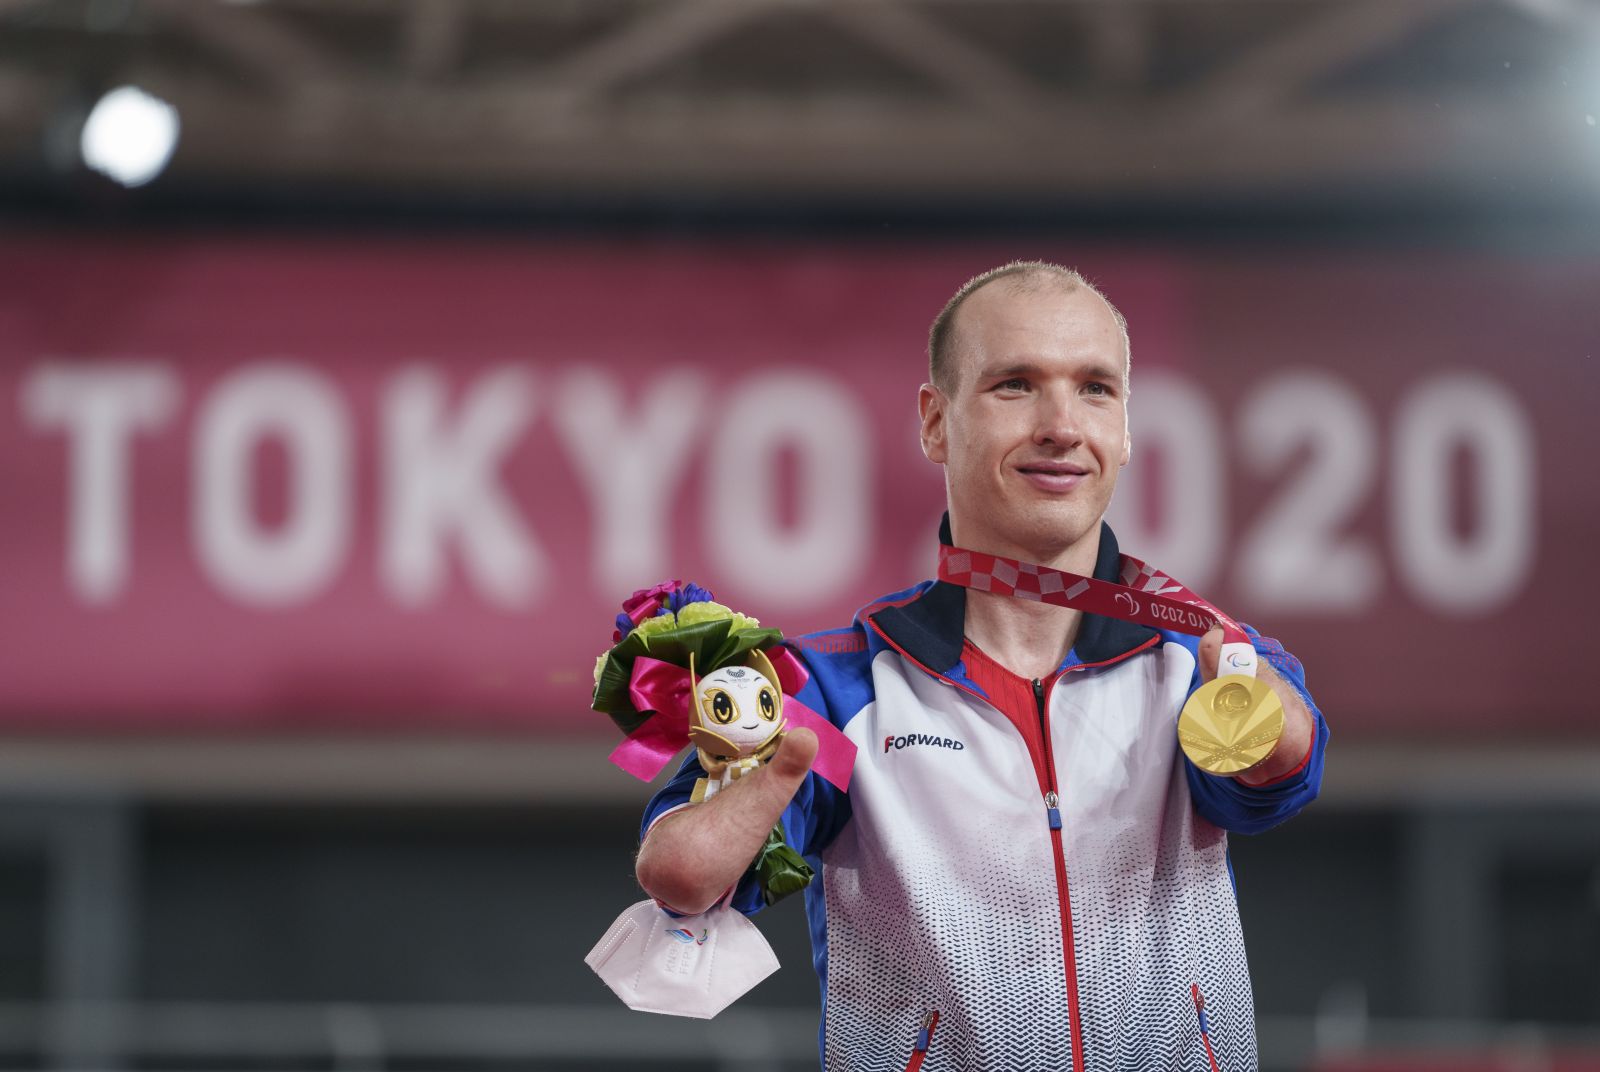 В.В. Путин поздравил победителя XVI Паралимпийских летних игр в Токио в соревнованиях по велоспорту в дисциплине трек, гонка преследования на 3000 метров М. Асташова